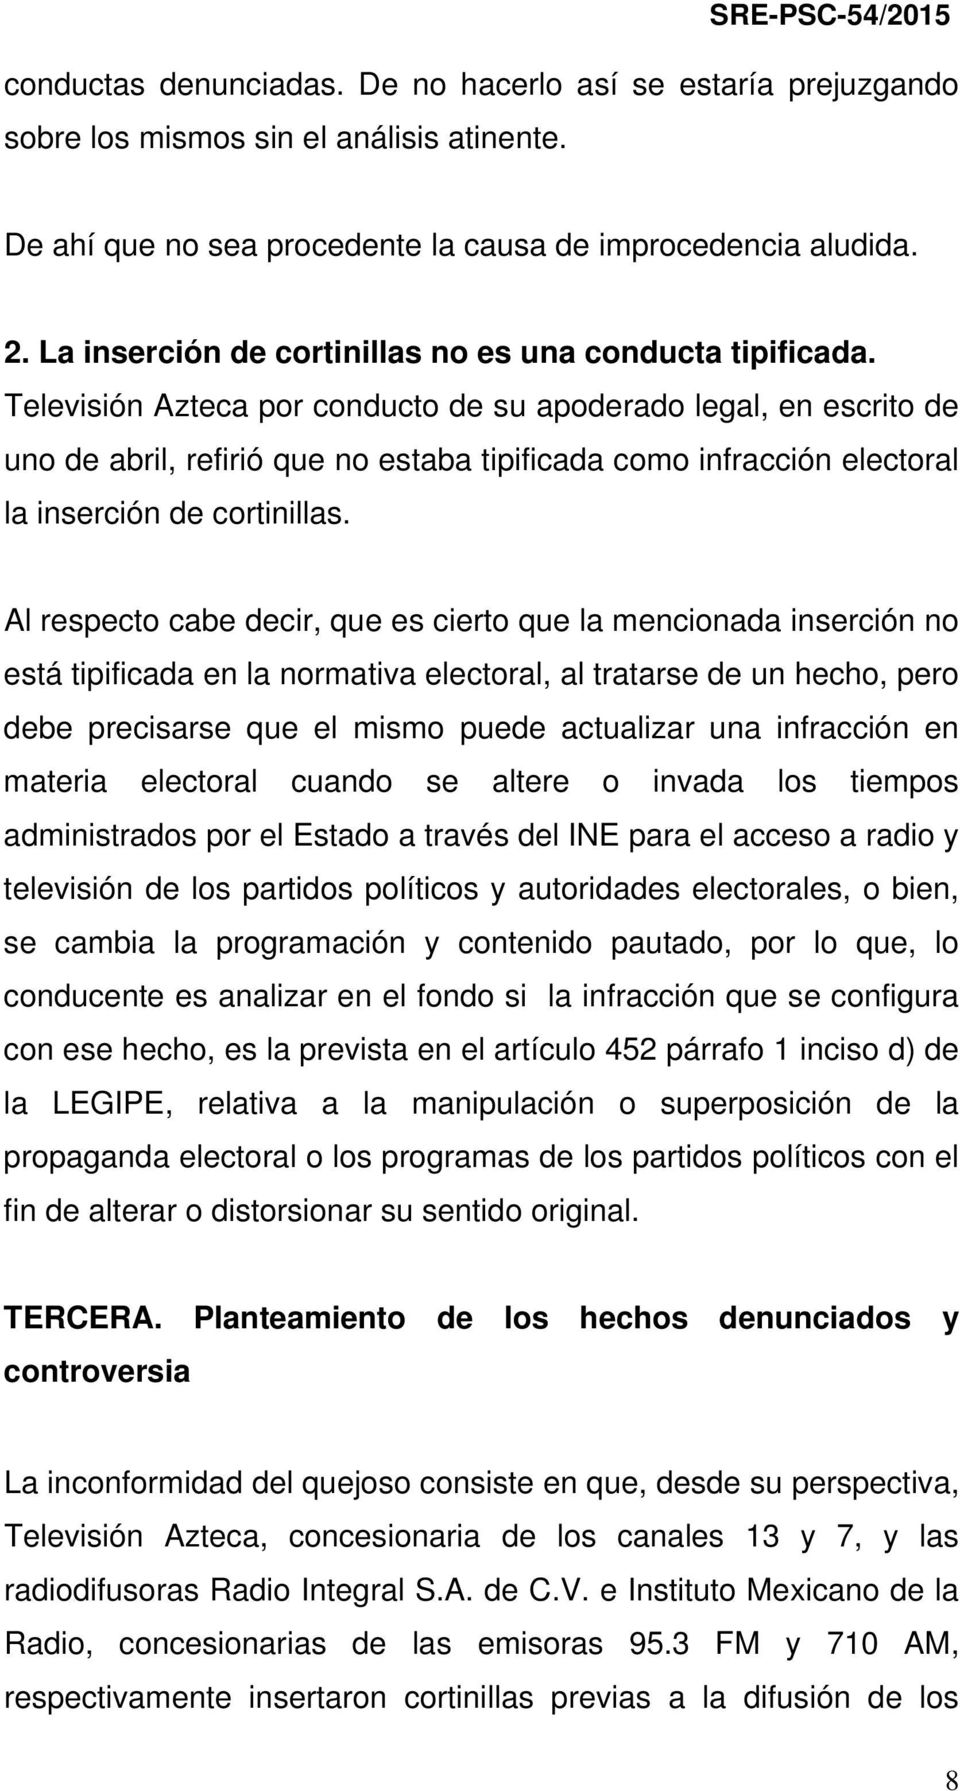 Televisión Azteca por conducto de su apoderado legal, en escrito de uno de abril, refirió que no estaba tipificada como infracción electoral la inserción de cortinillas.